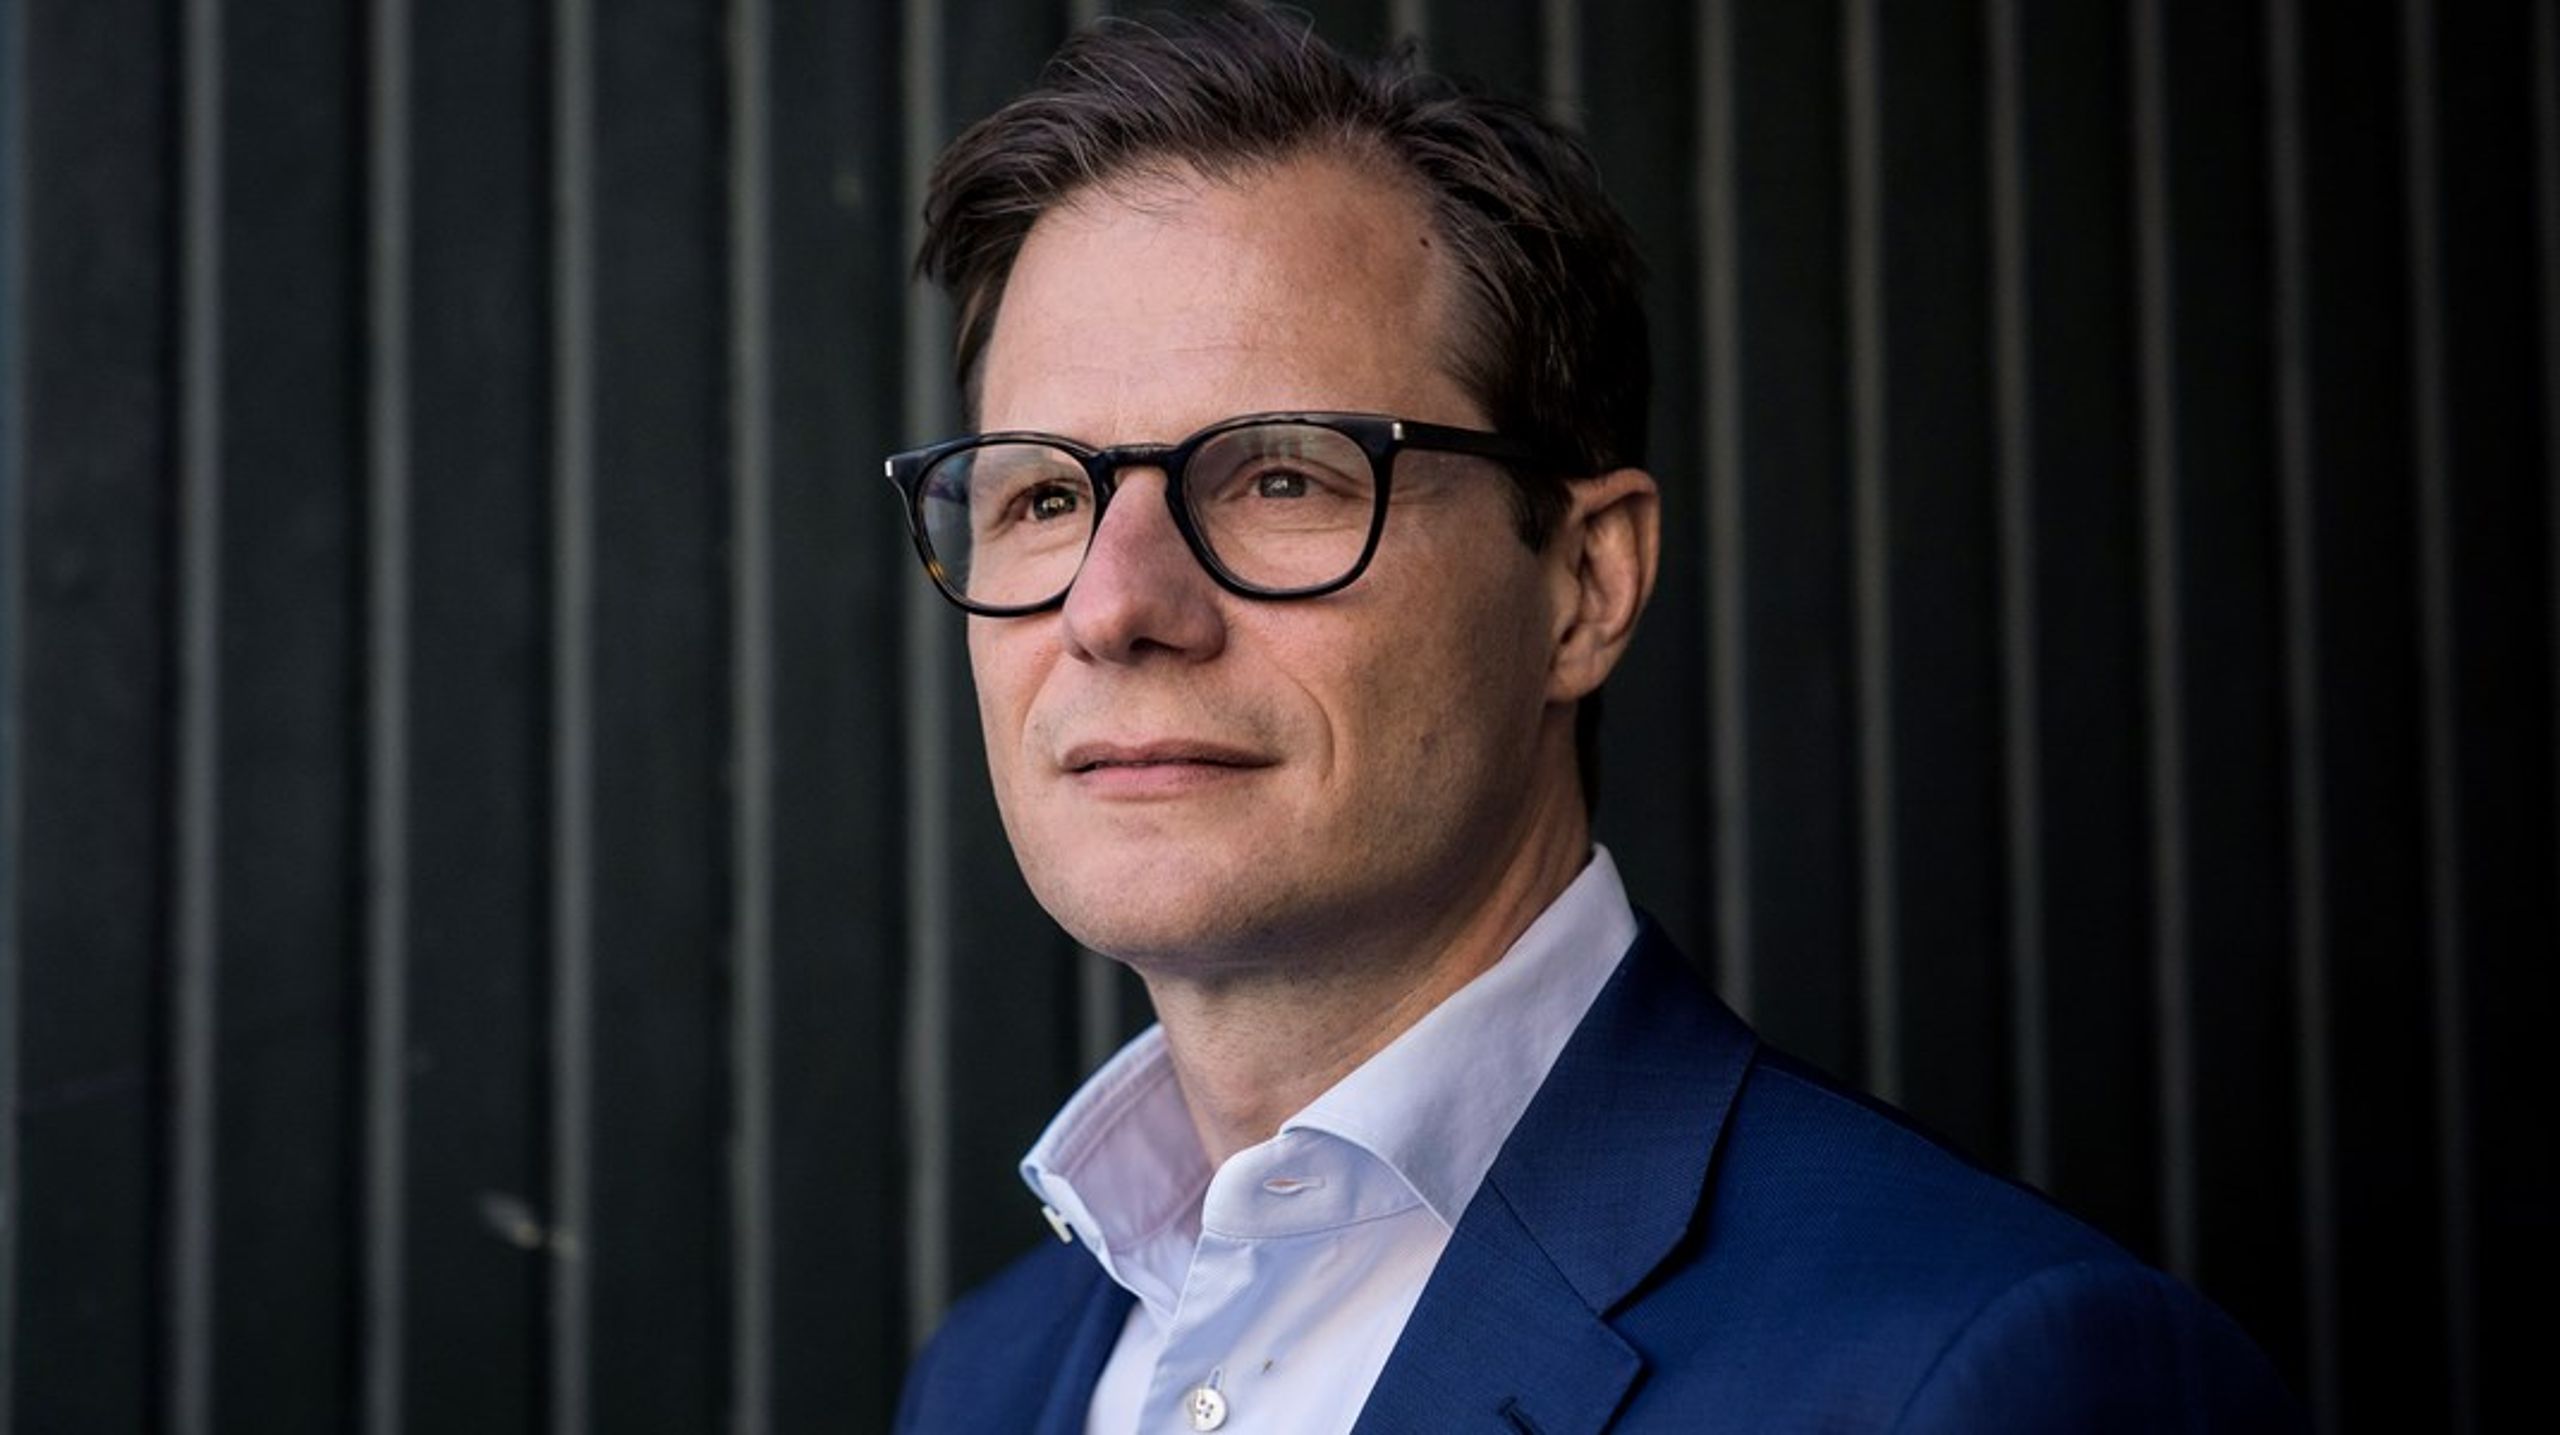 Carsten Egeriis udnævnes til formand for klimapartnerskabet for finanssektoren af erhvervsminister Morten Bødskov.